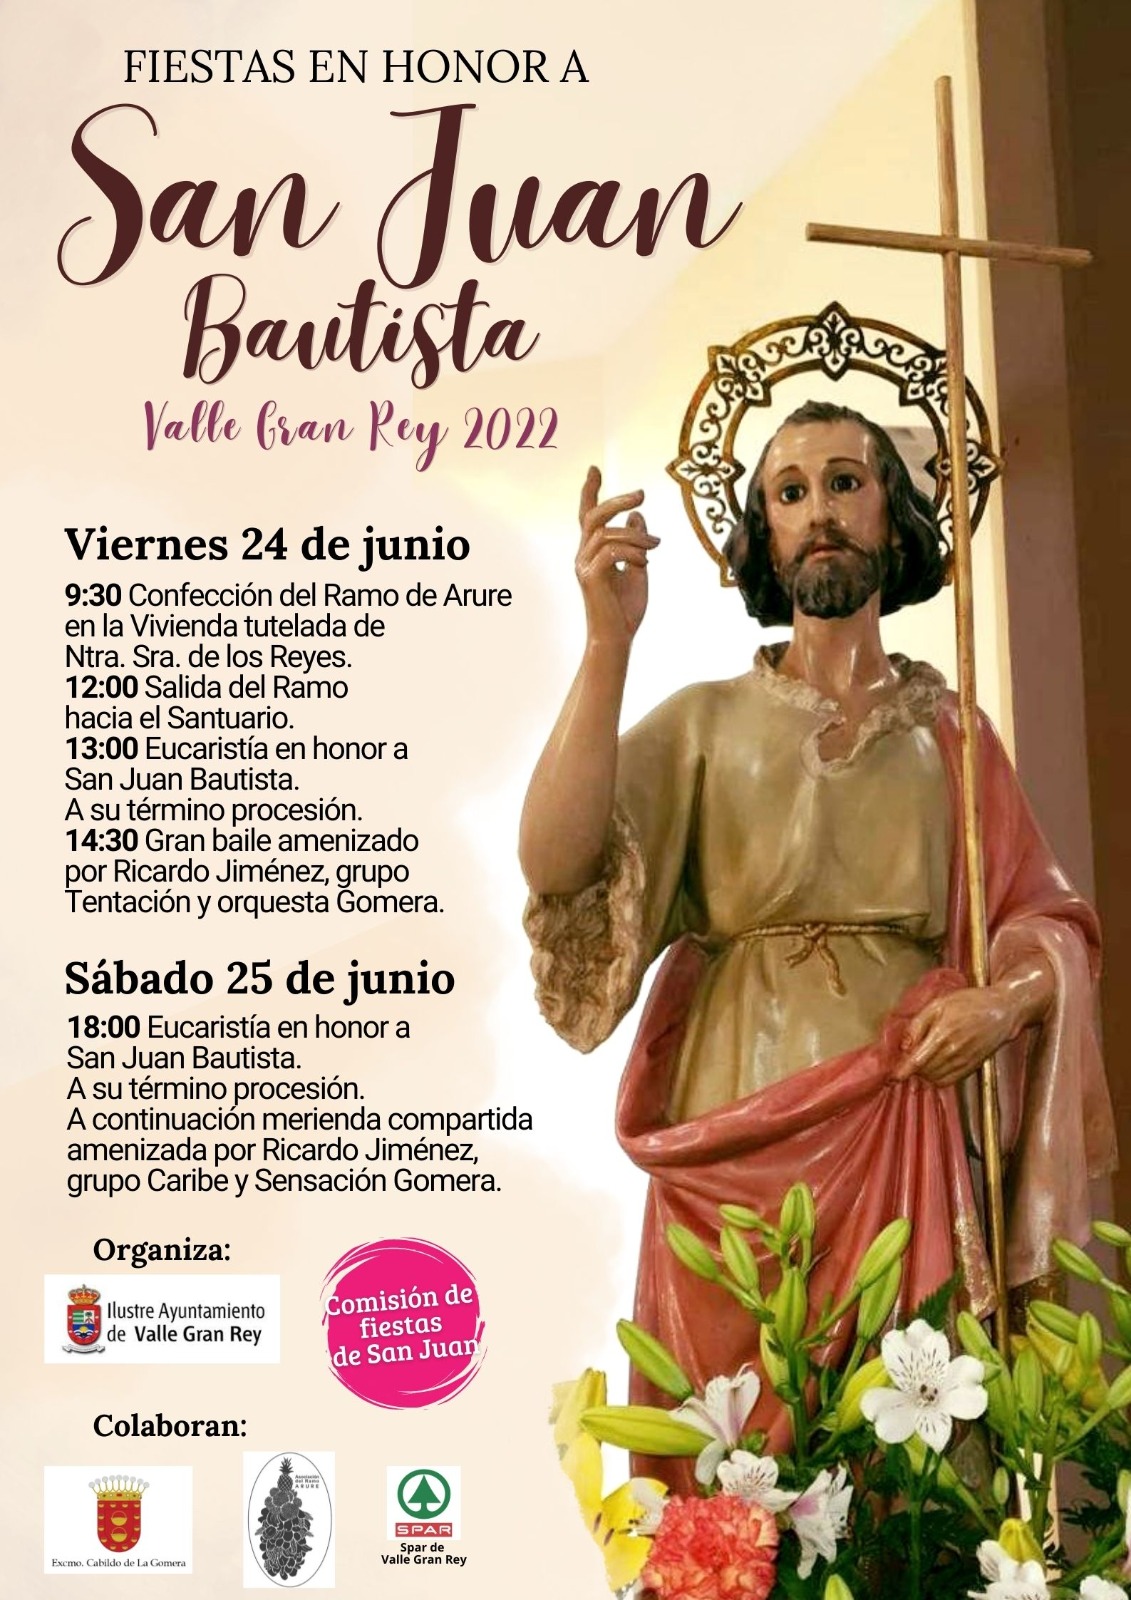 Valle Gran Rey presenta programa de con motivo de las Fiestas honor a San Juan Bautista - Valle Gran Rey